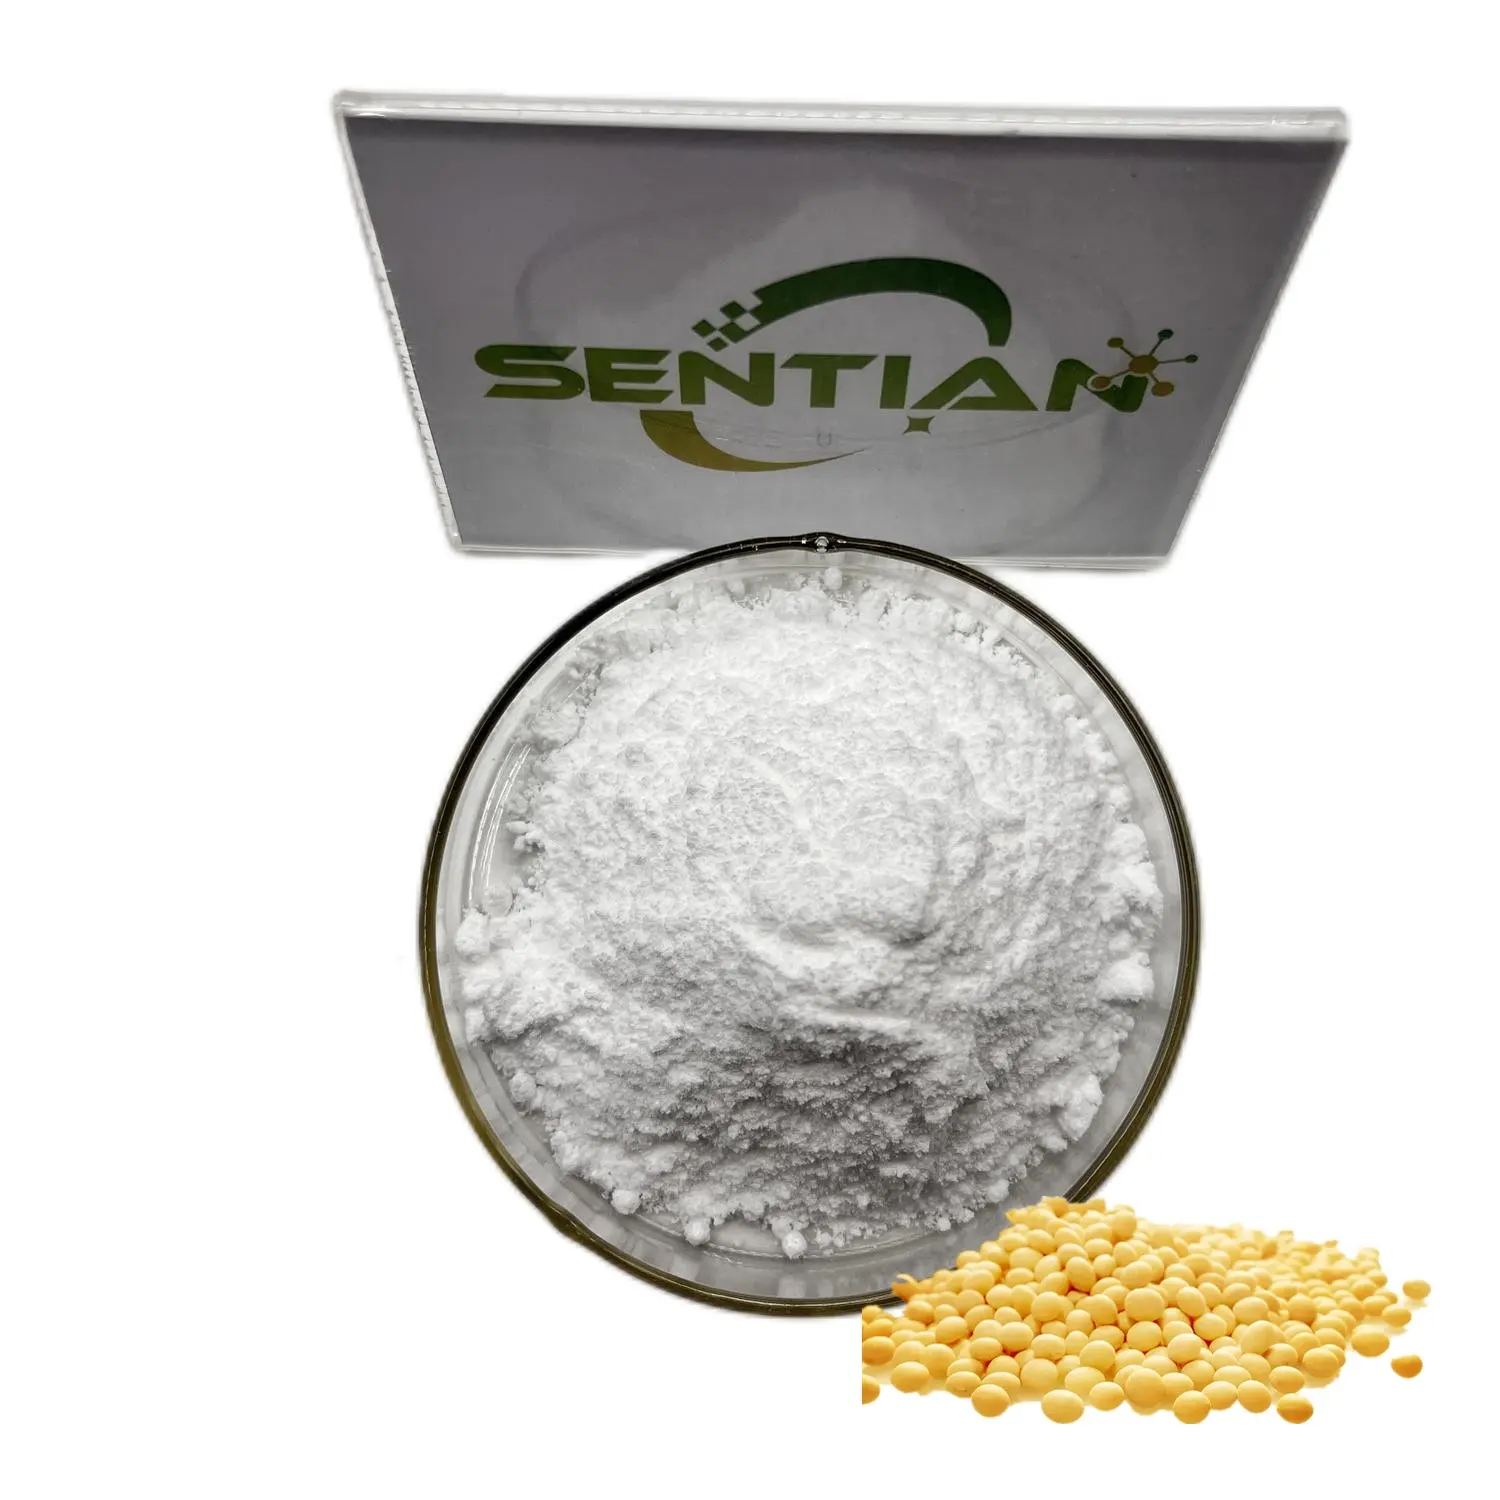 Food Grade Soybean Soy Extract Daidzein Natural Sipplement 98% Daidzein